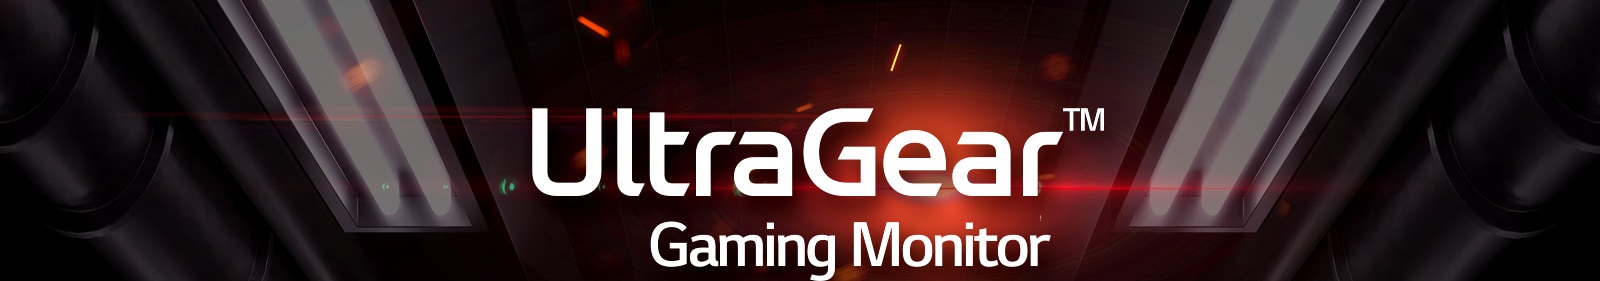 UltraGear™ gamingmonitor